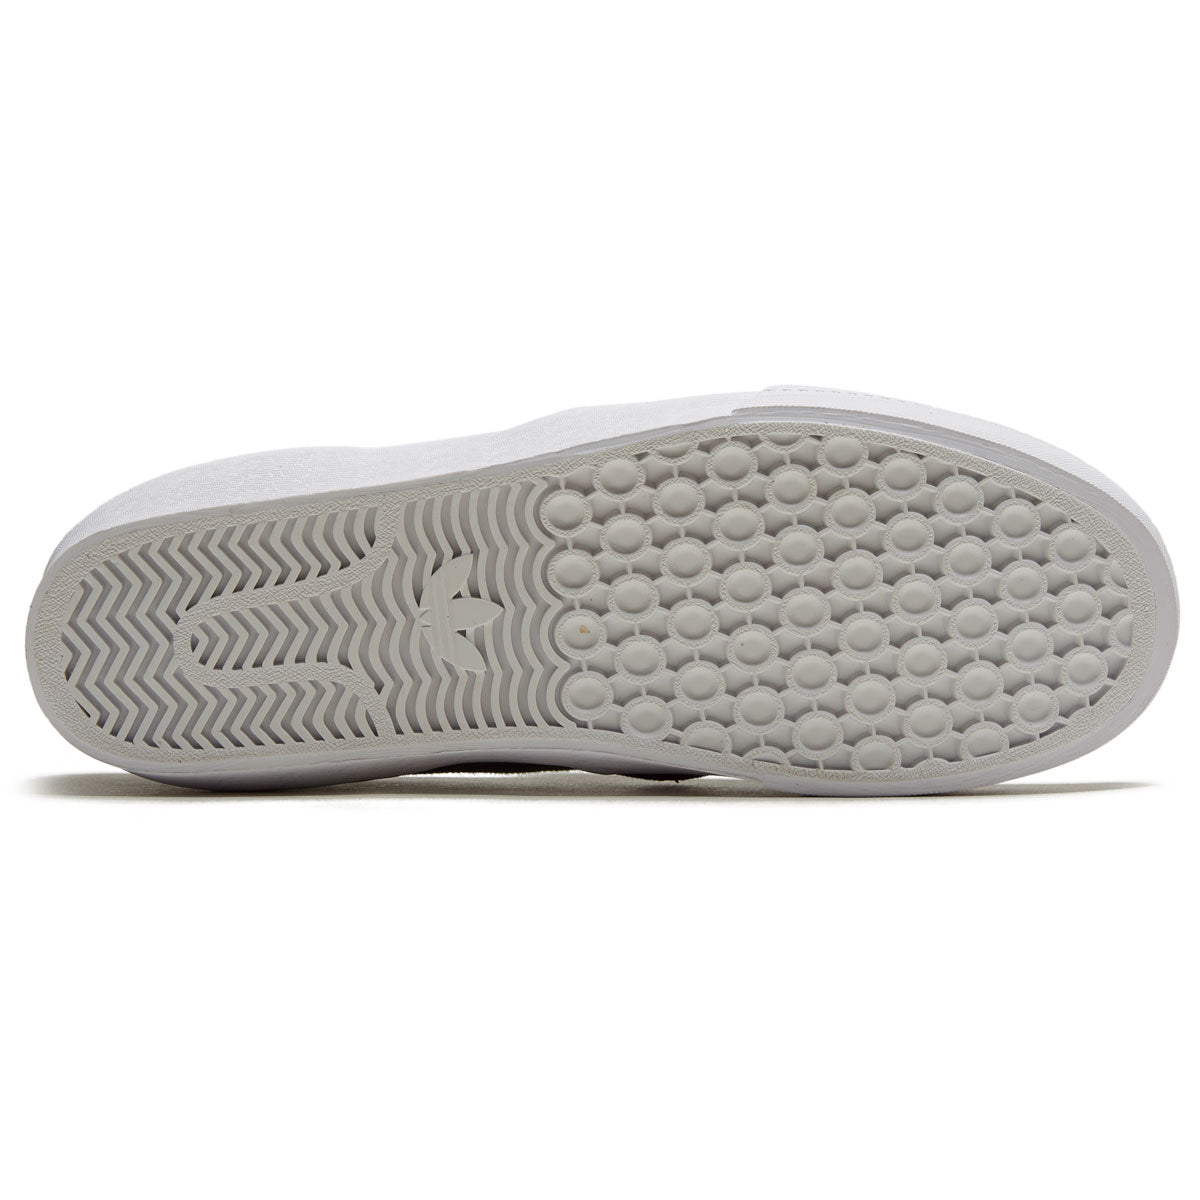 Adidas Shmoofoil Slip On Shoes - Core Black/Grey/White image 4